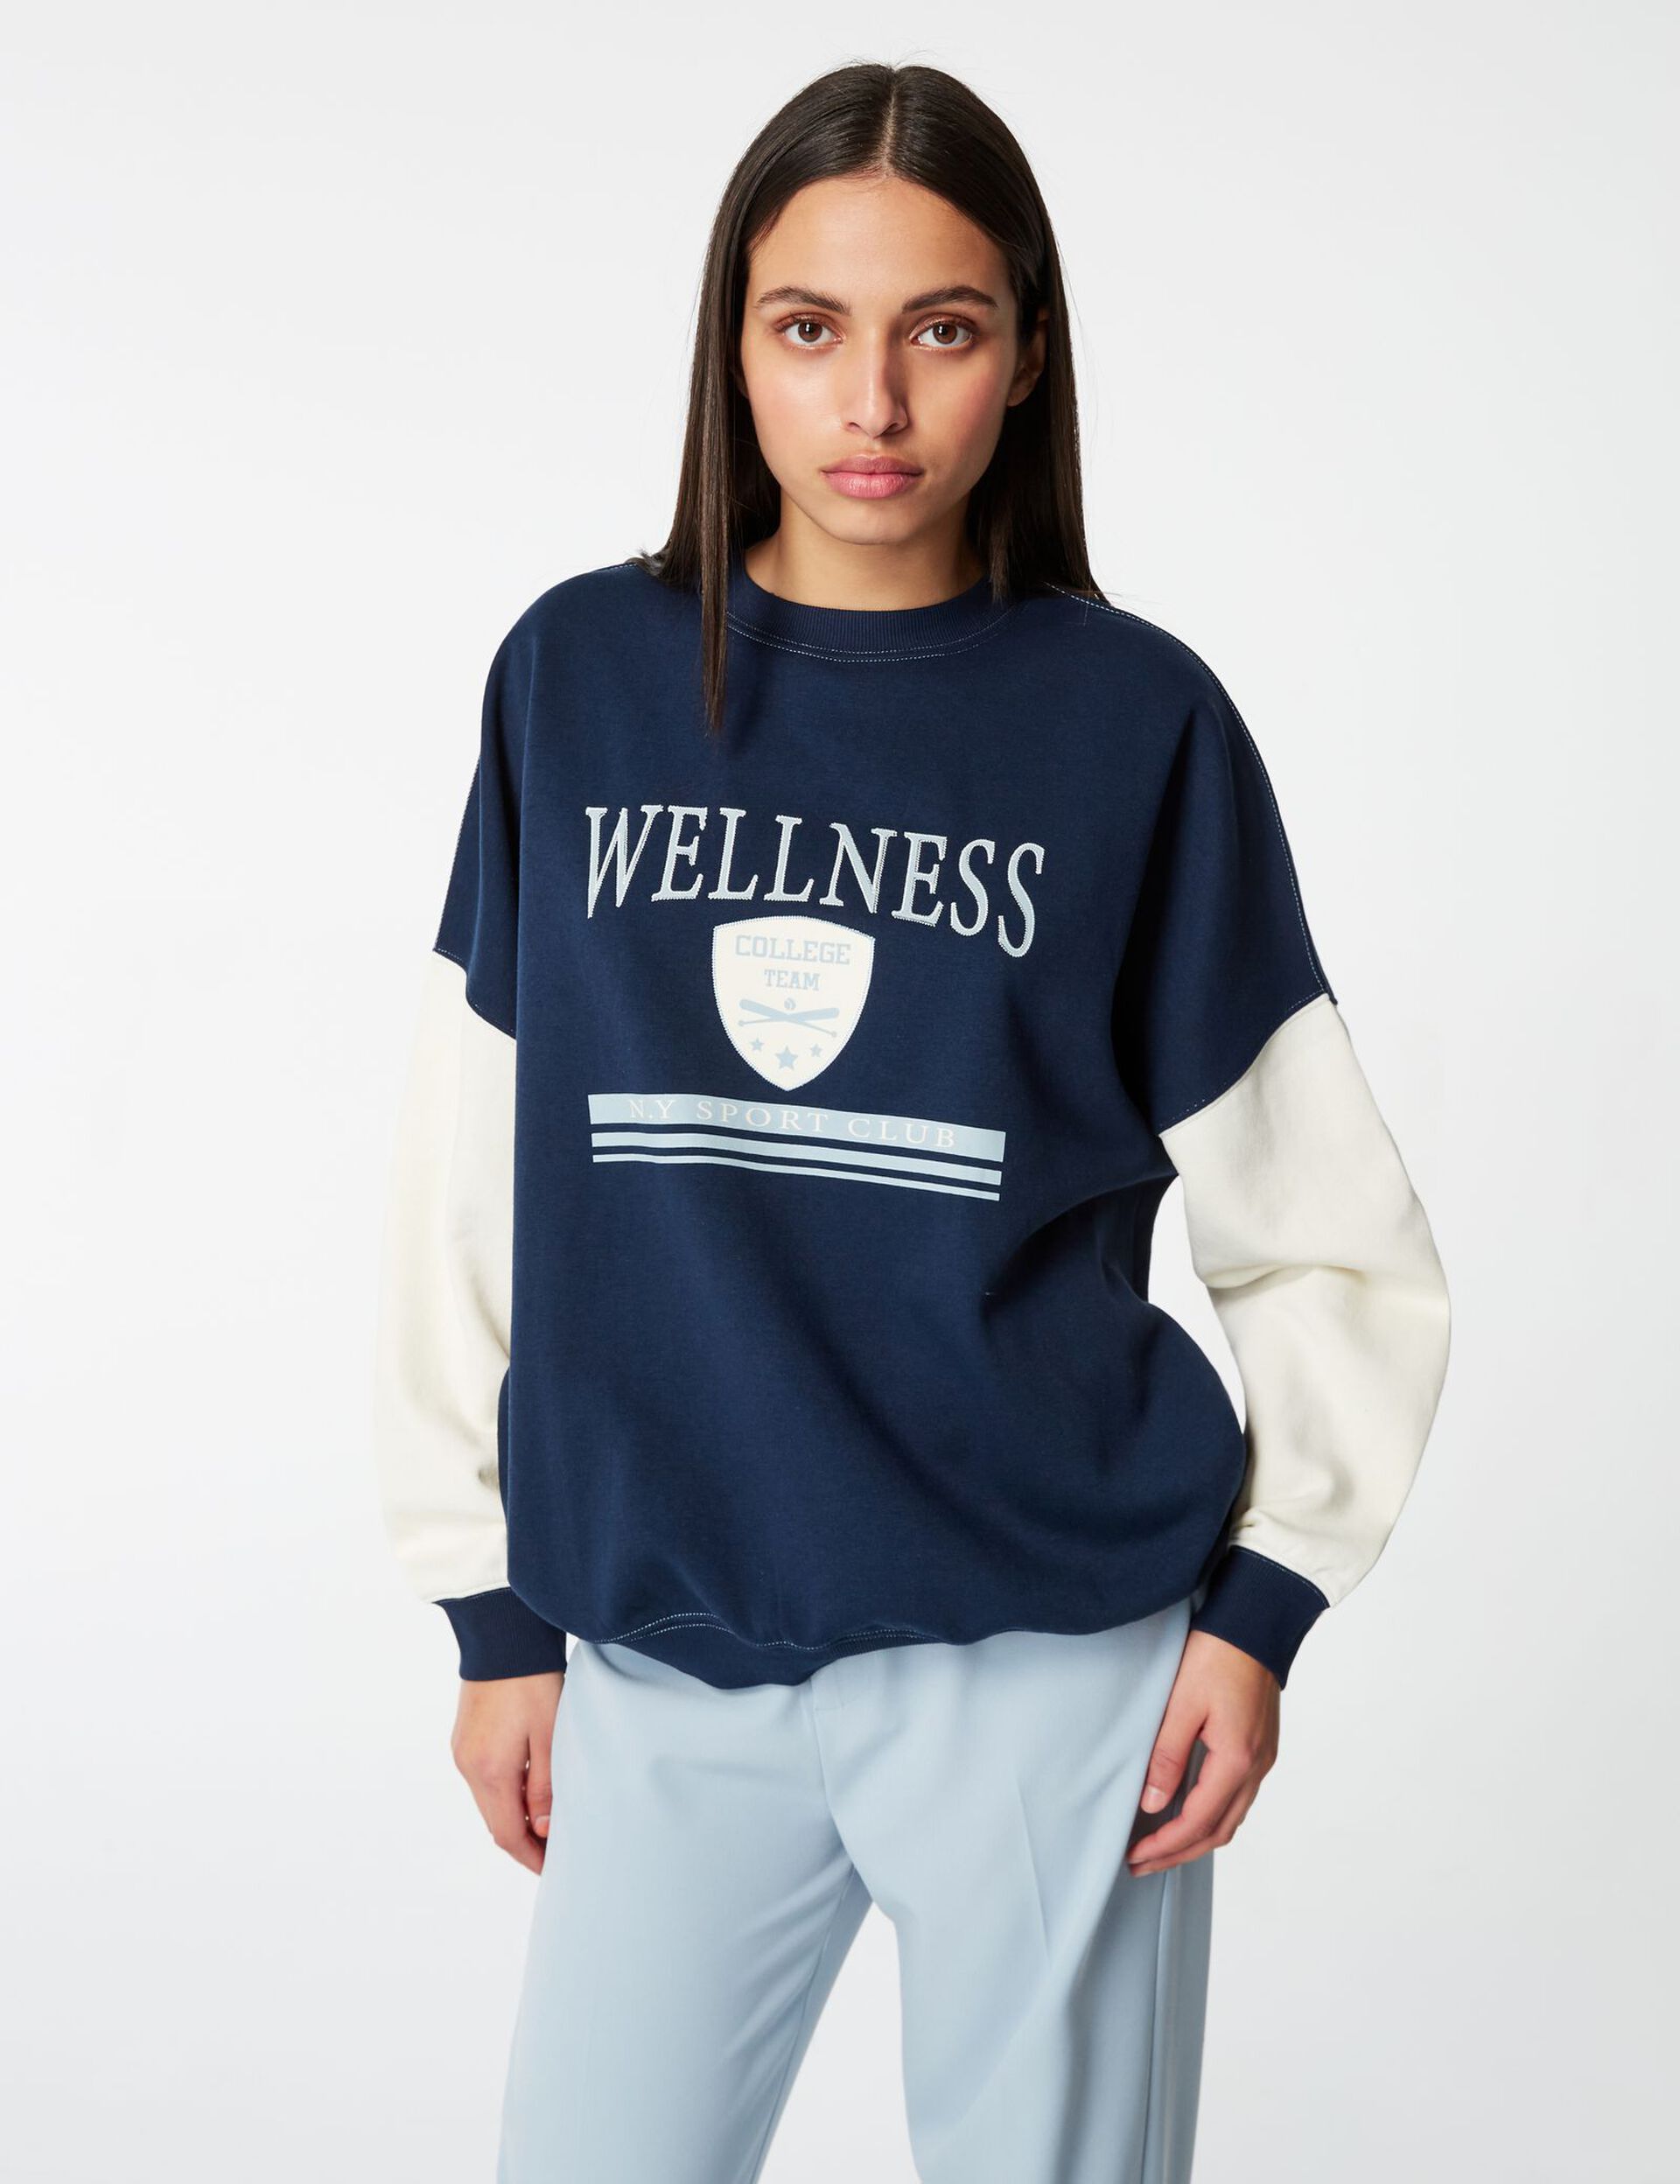 Wellness sweatshirt